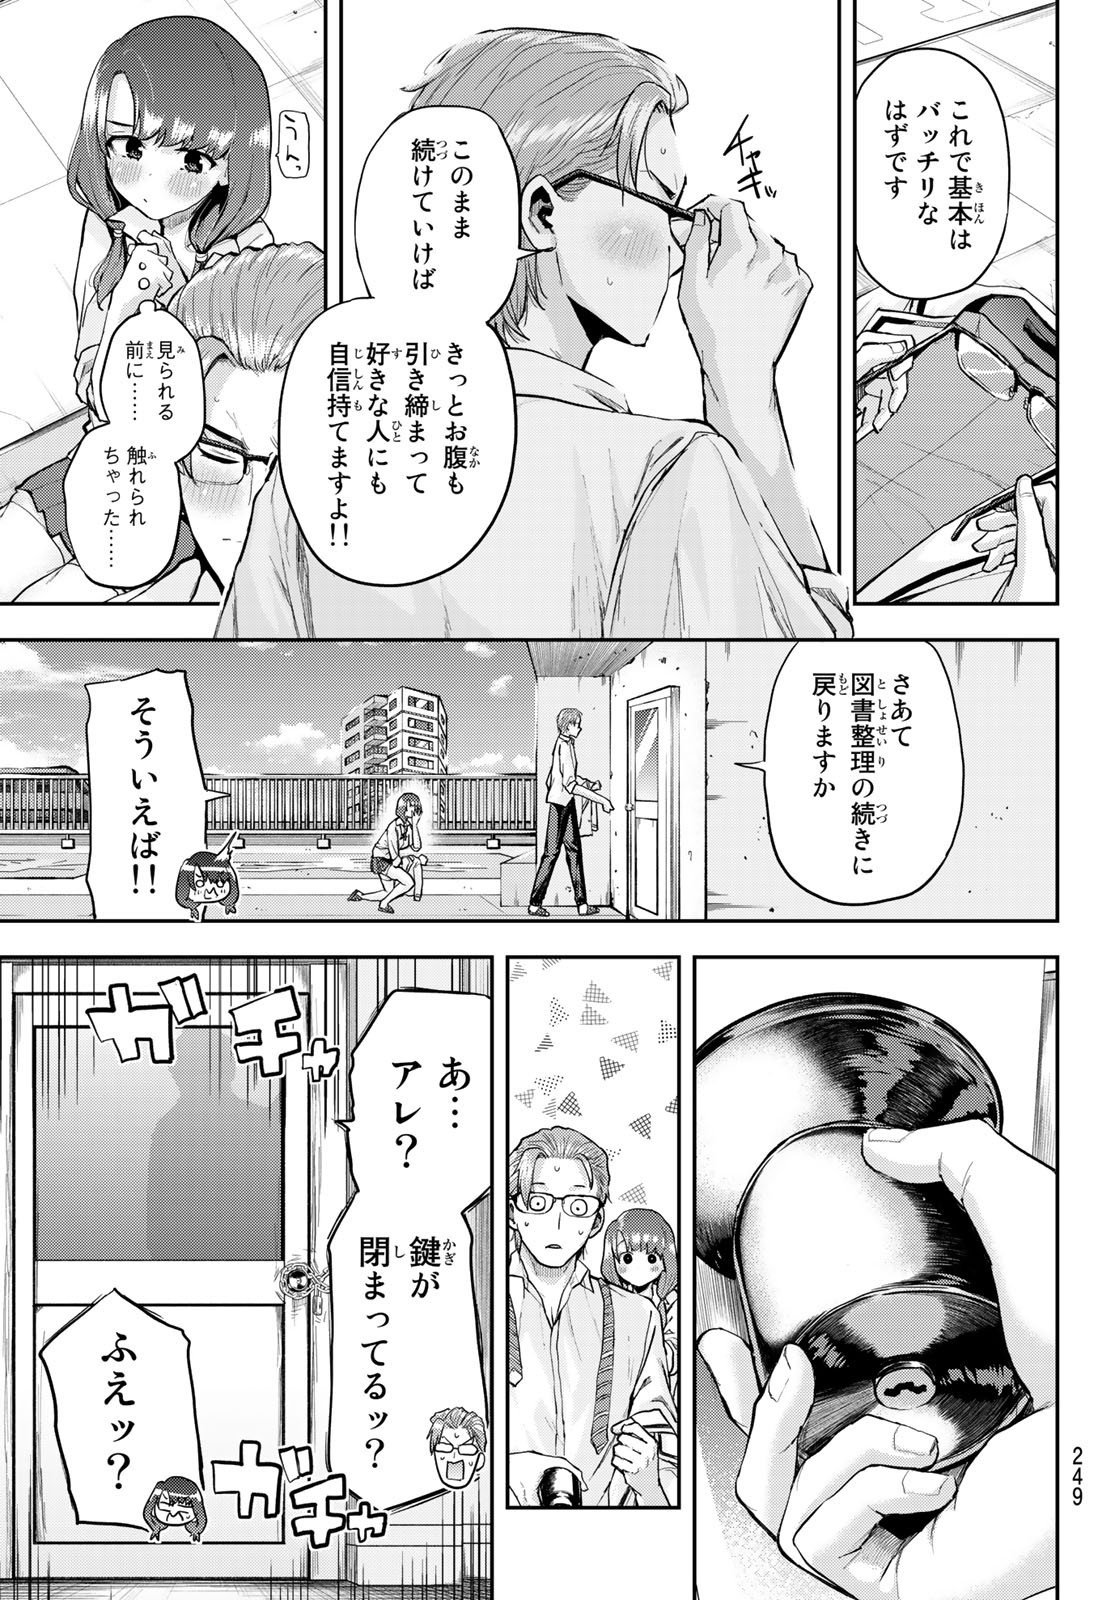 Kitazawa-kun wa A Class - Chapter 007 - Page 17